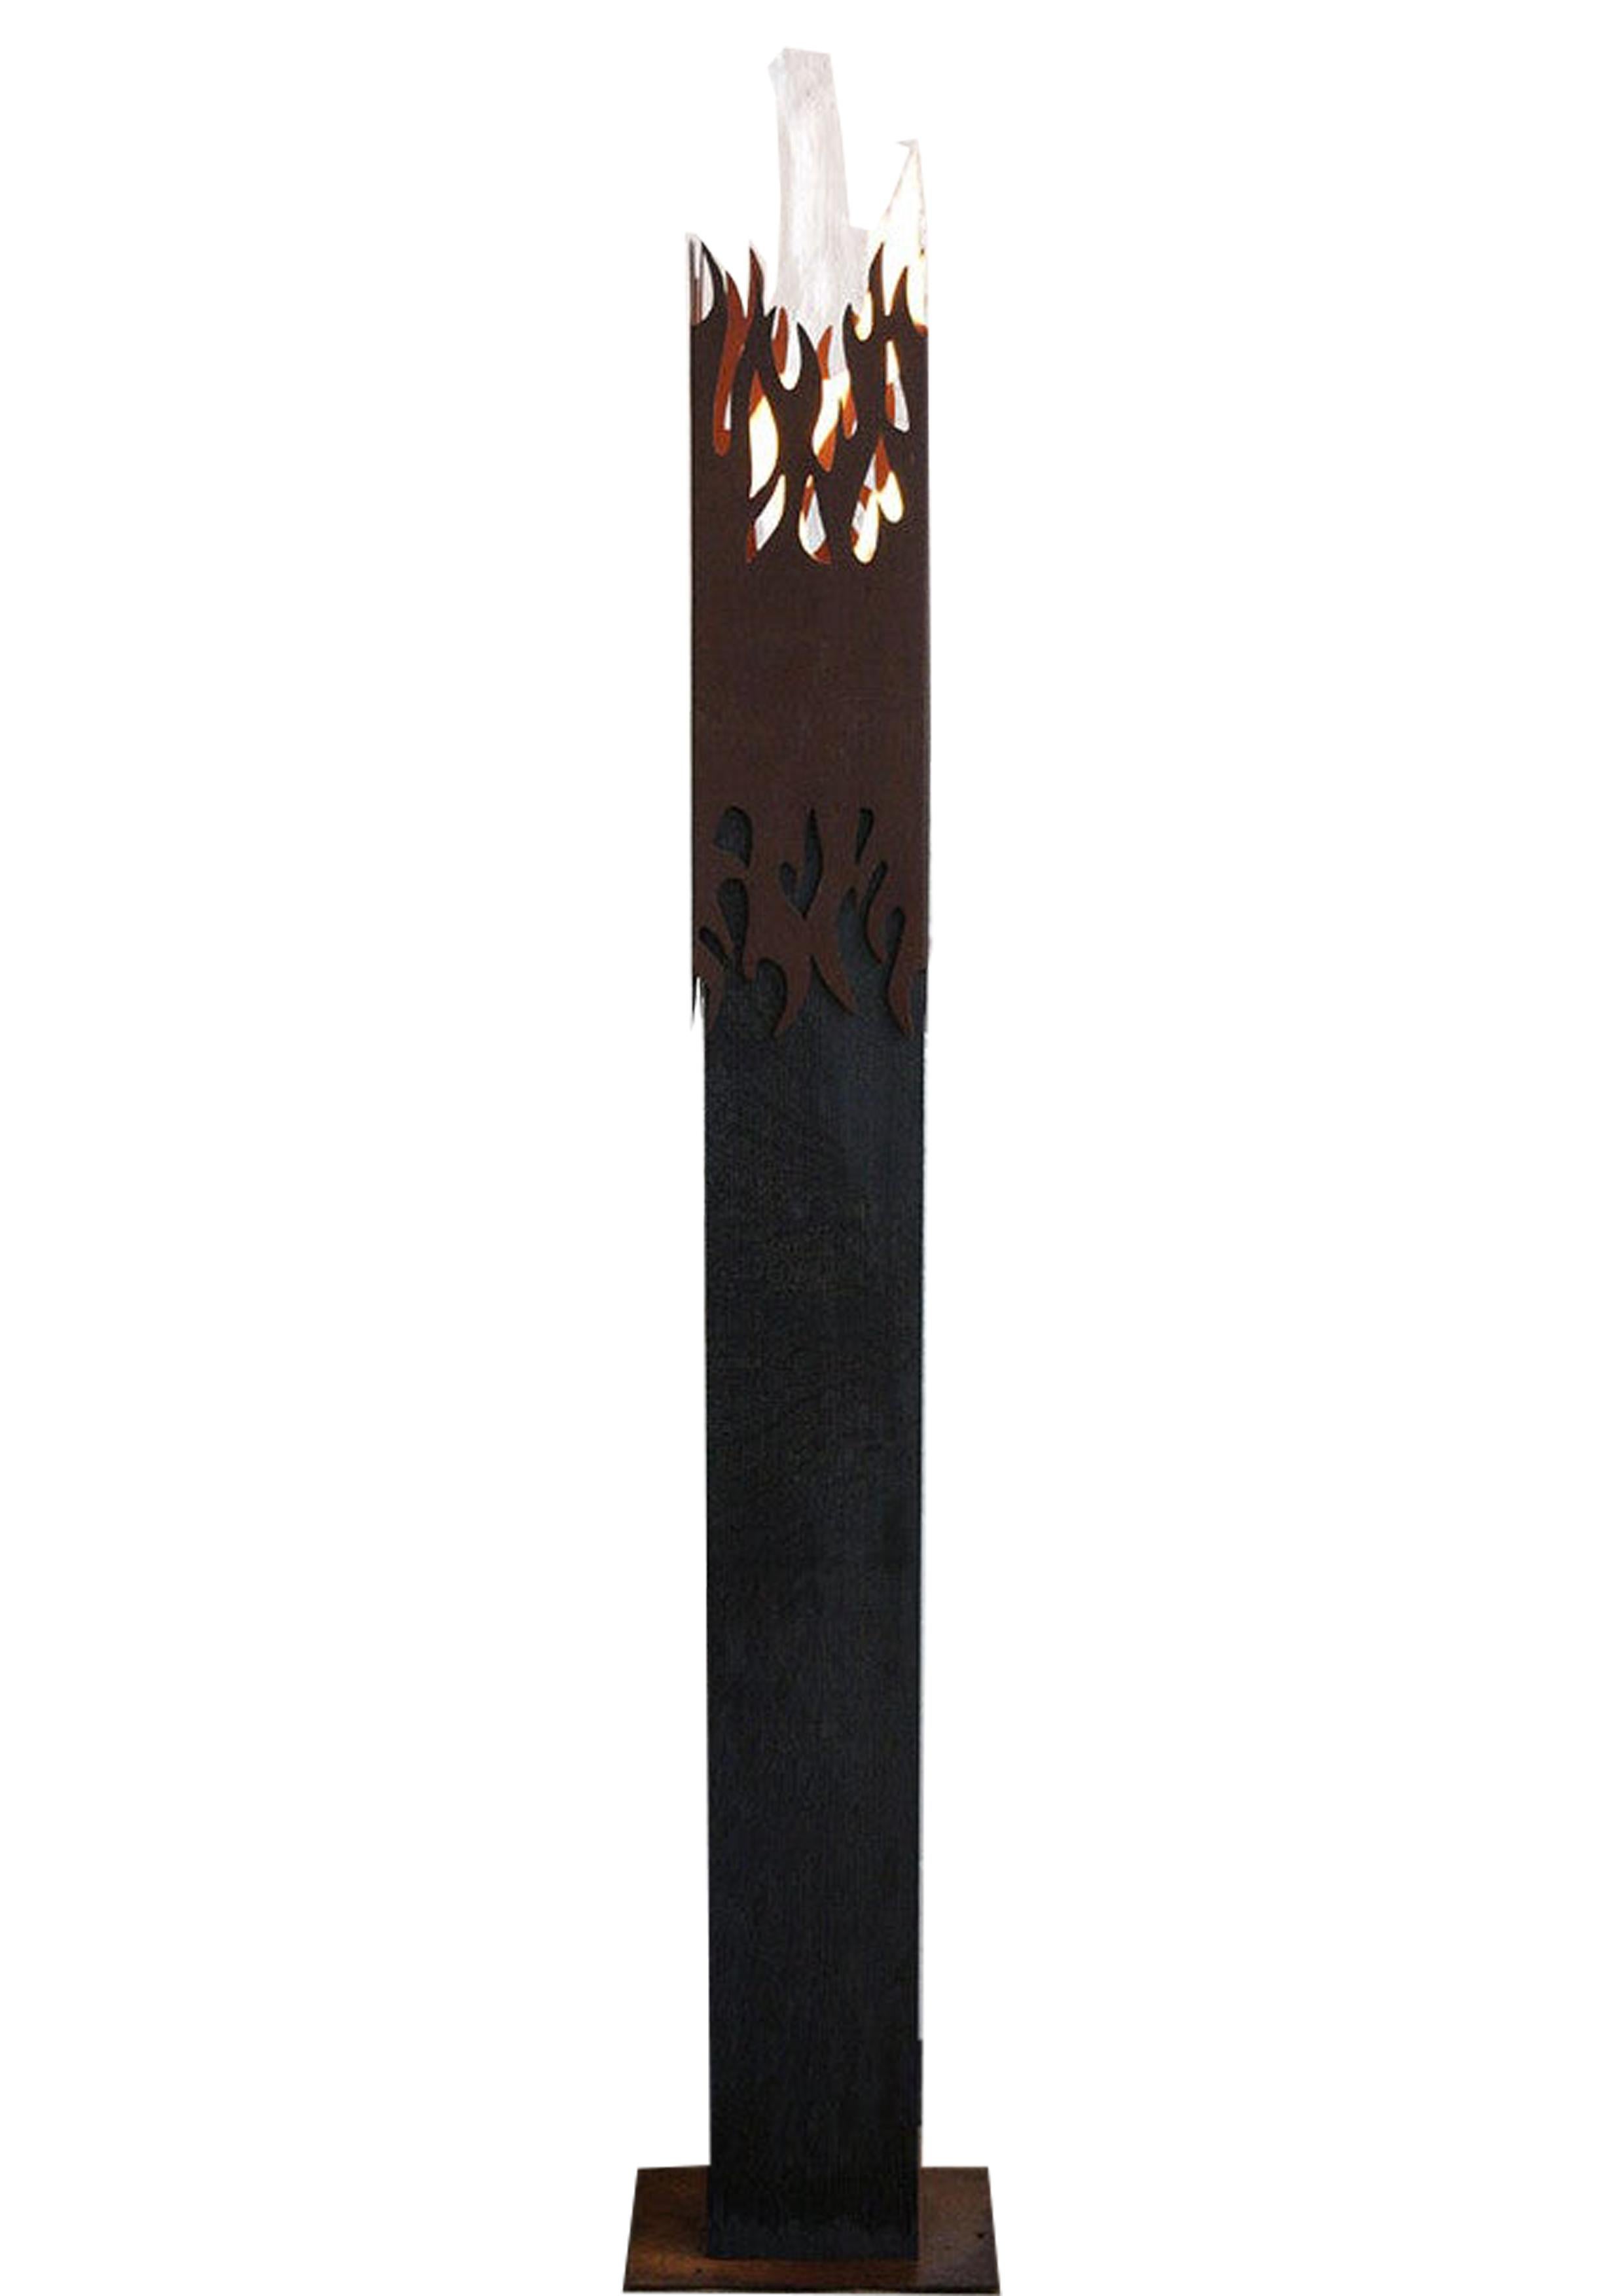 Dark Oak Column and Garden Torch - "Flame" - handmade art object - Art by Stefan Traloc